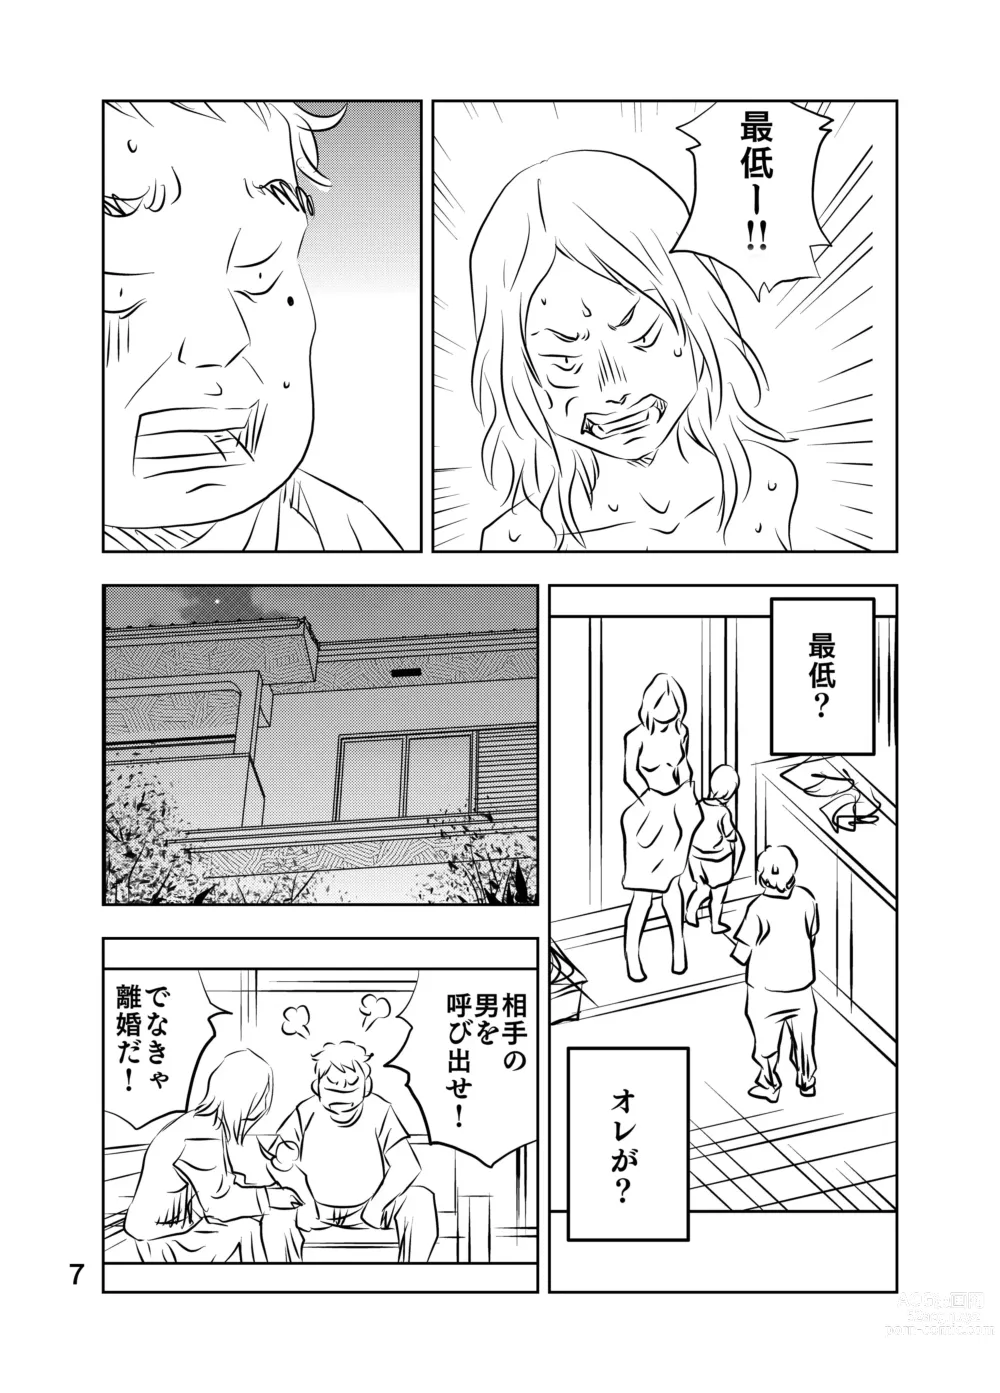 Page 73 of doujinshi Zurui Hito-tachi 2